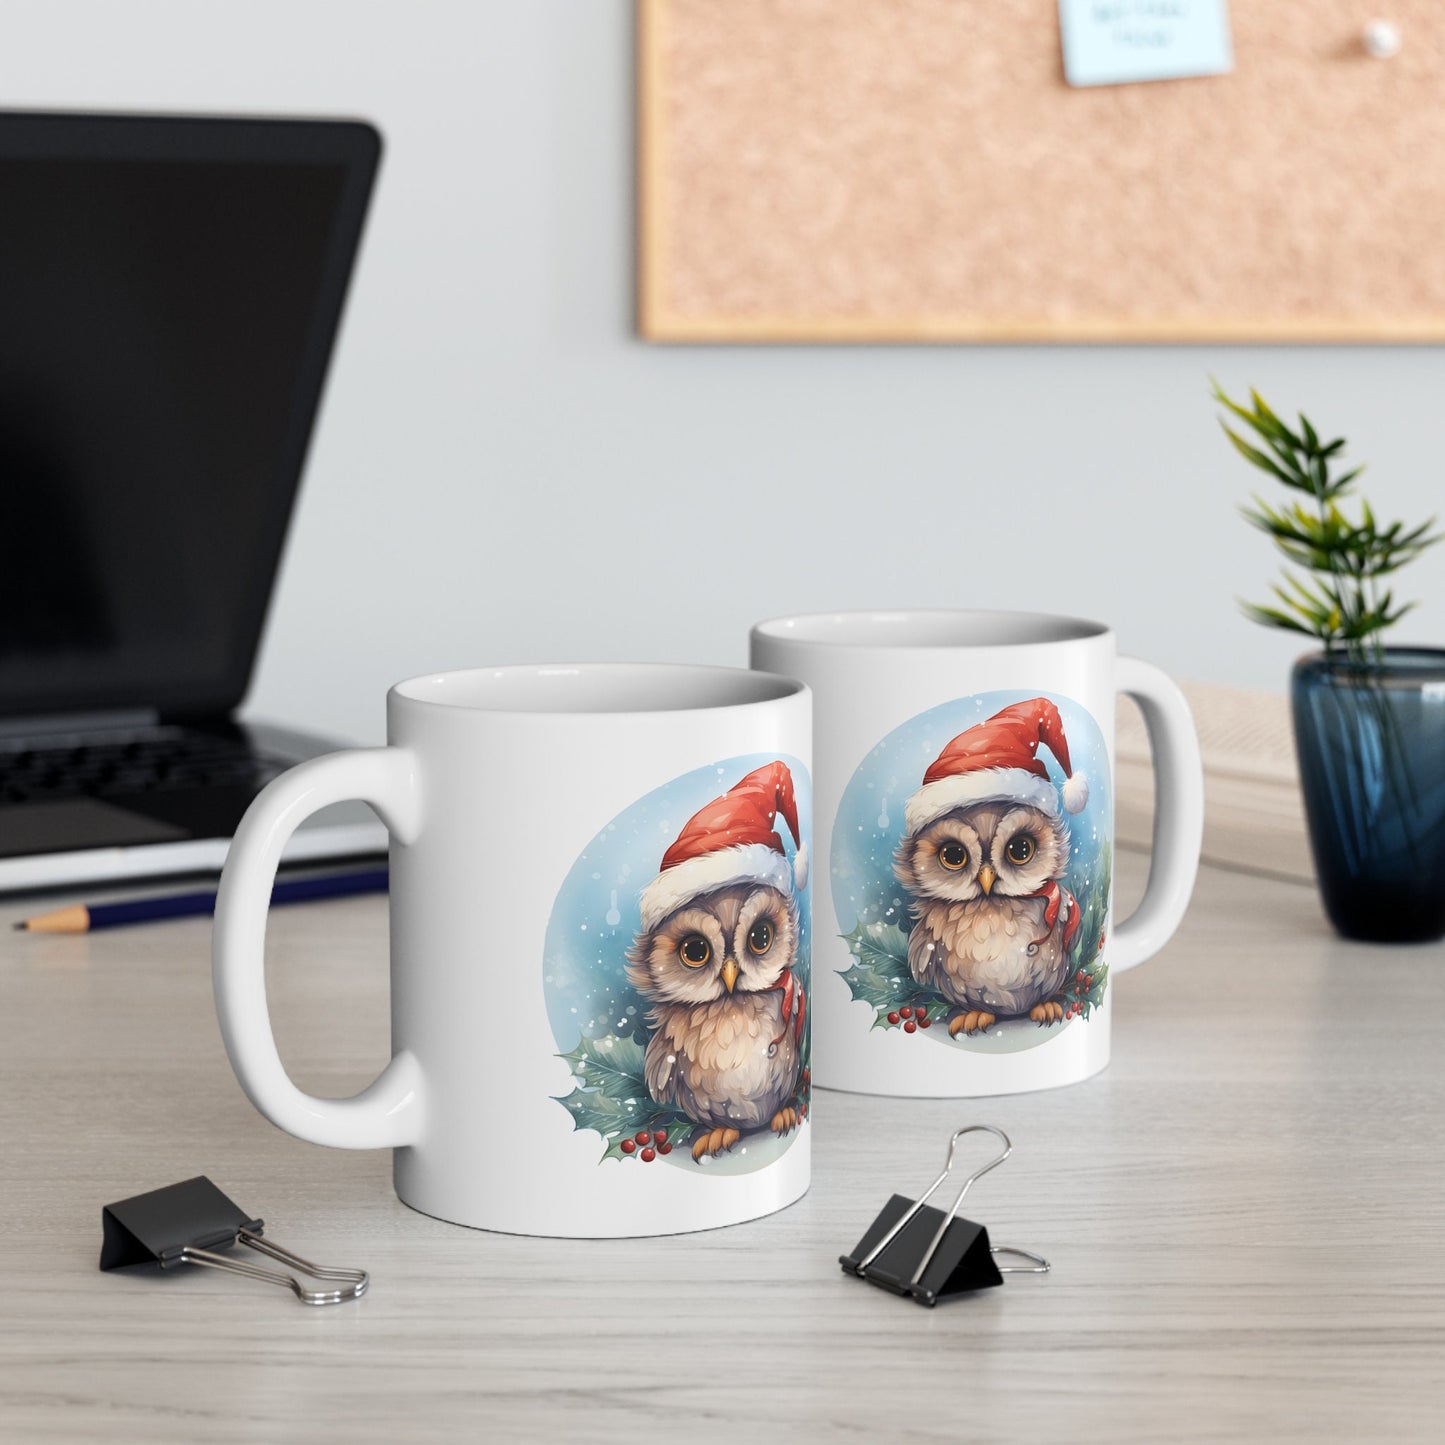 Santa Hat Owl Christmas Mug, Perfect Holiday Cheer Coffee Mug, Gift Mug for Christmas Spirit, Cute X-Mas mug for Family and friends